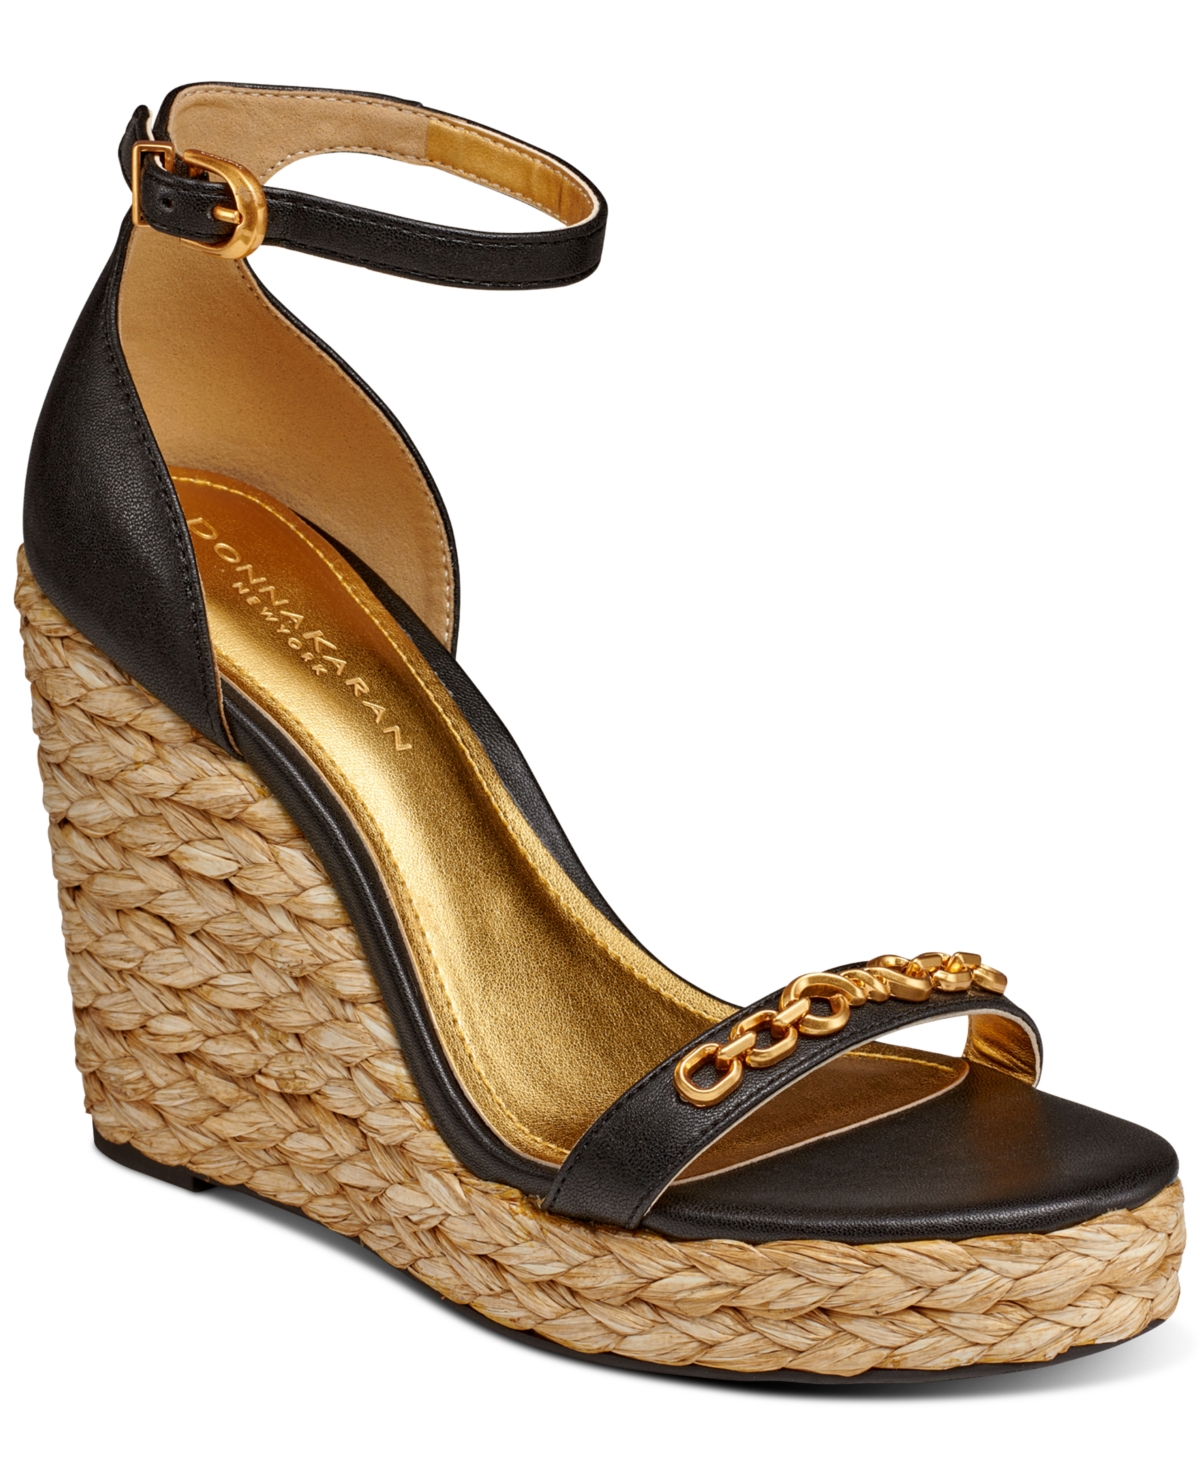 Yulissa Embellished Ankle-Strap Espadrille Wedge Sandals - Black